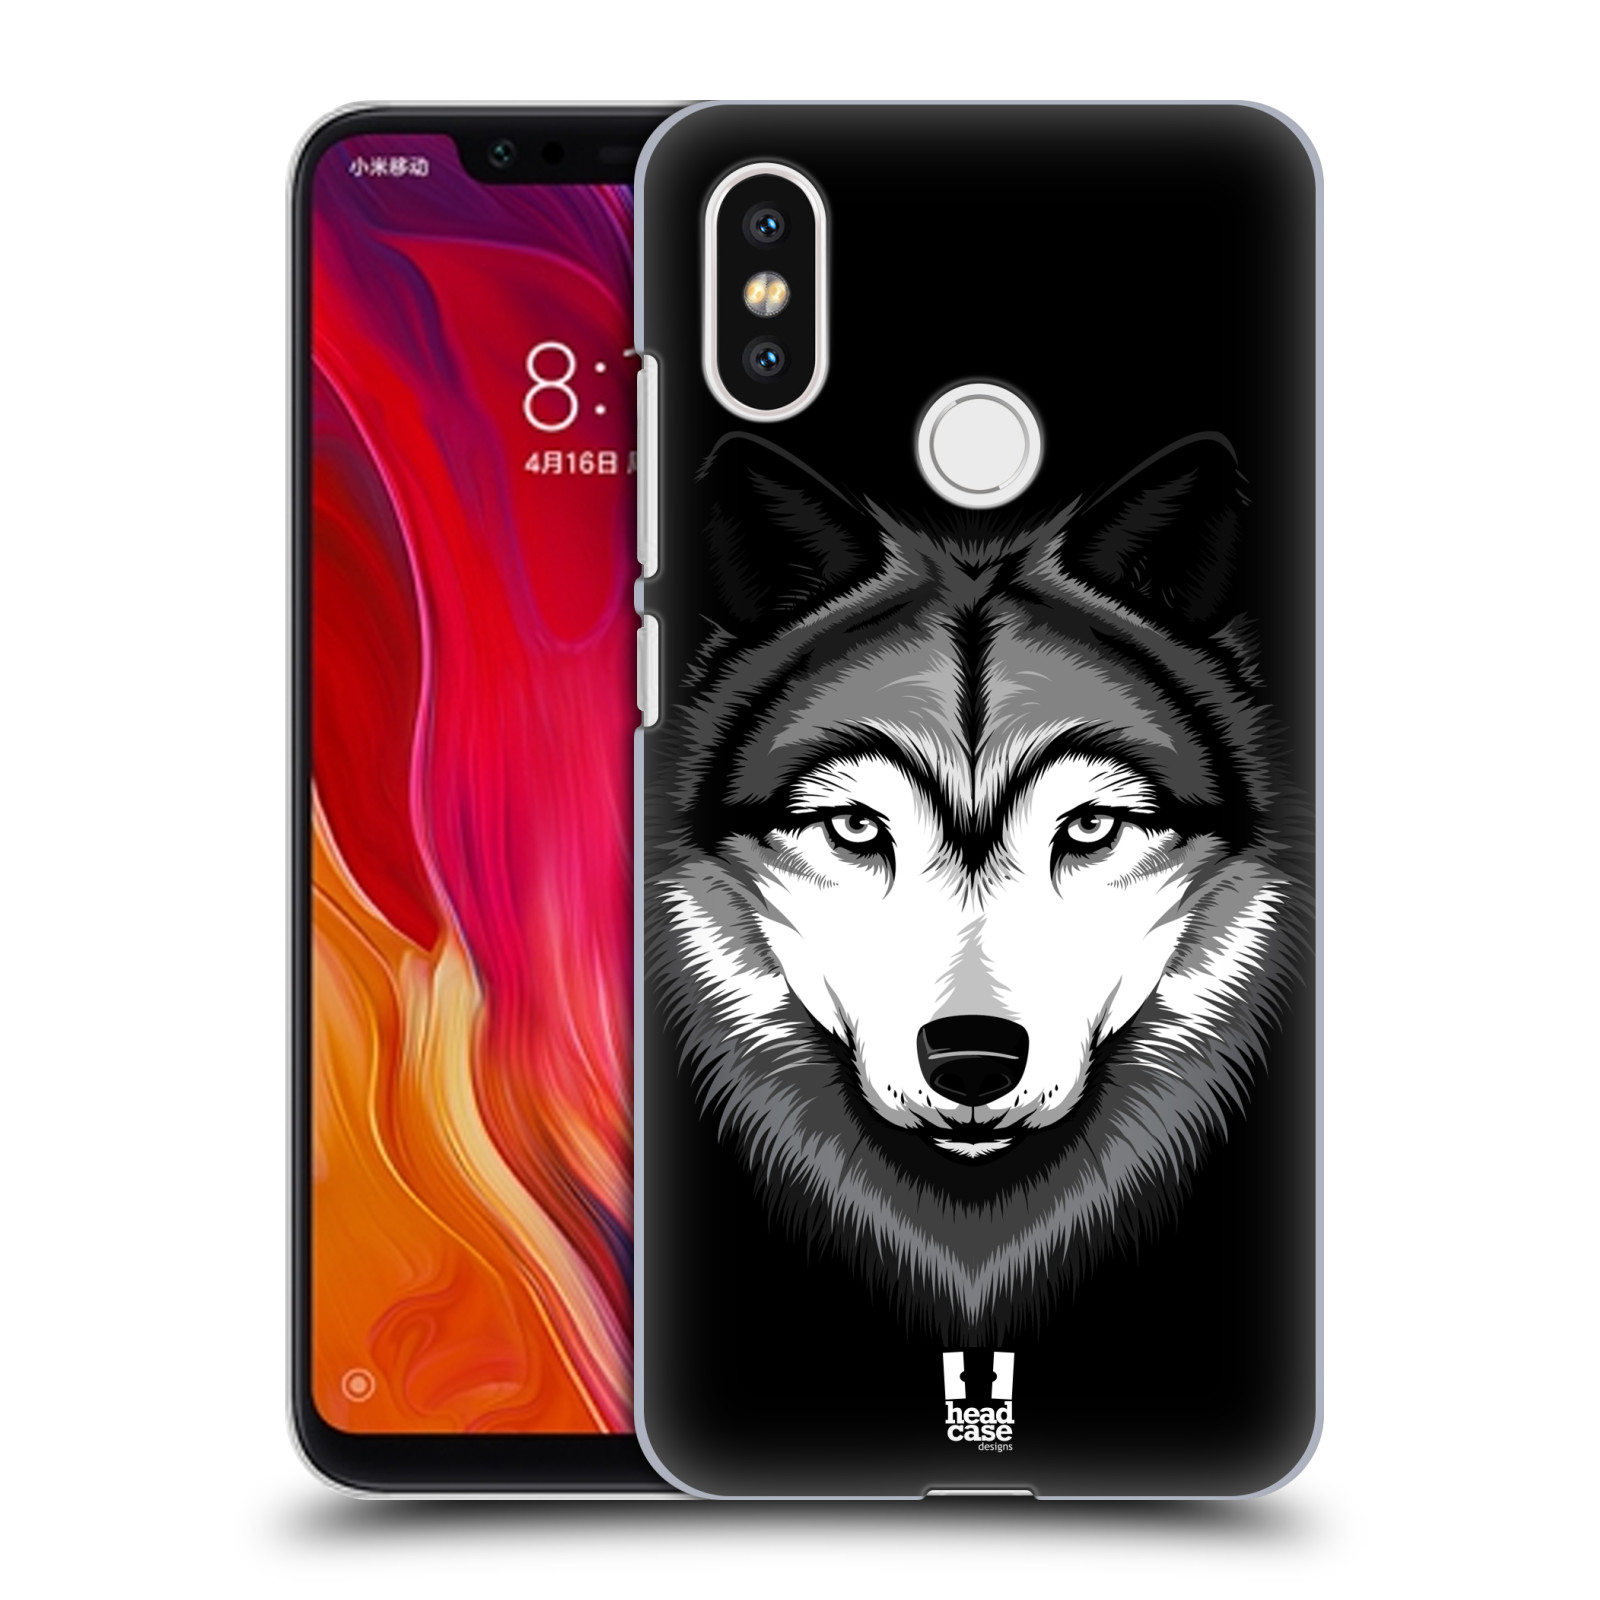 HEAD CASE plastový obal na mobil Xiaomi Mi 8 vzor Zvíře kreslená tvář 2 vlk